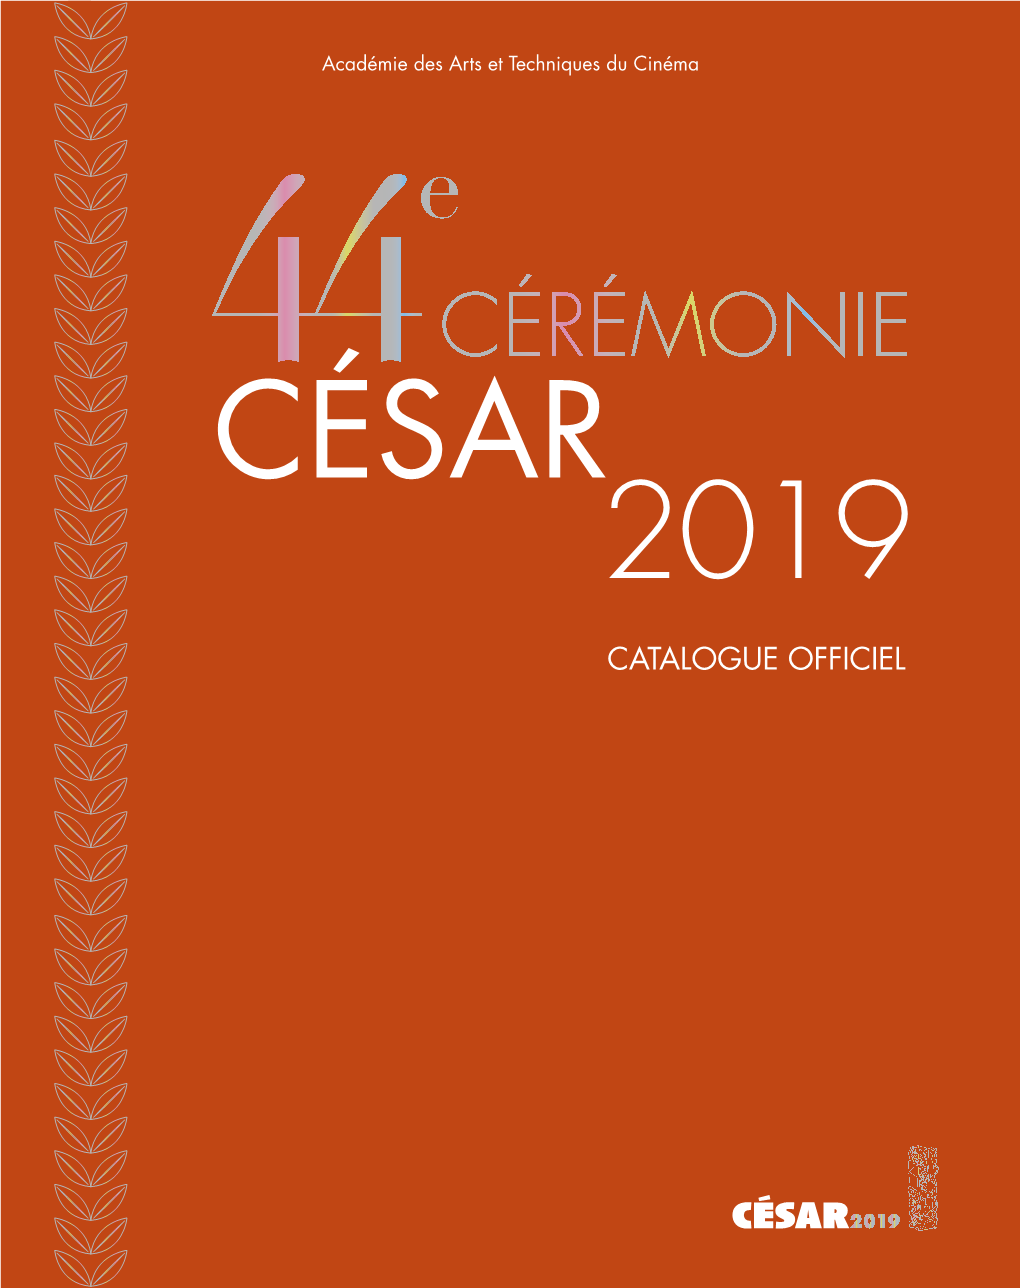 Cérémonie César 2019